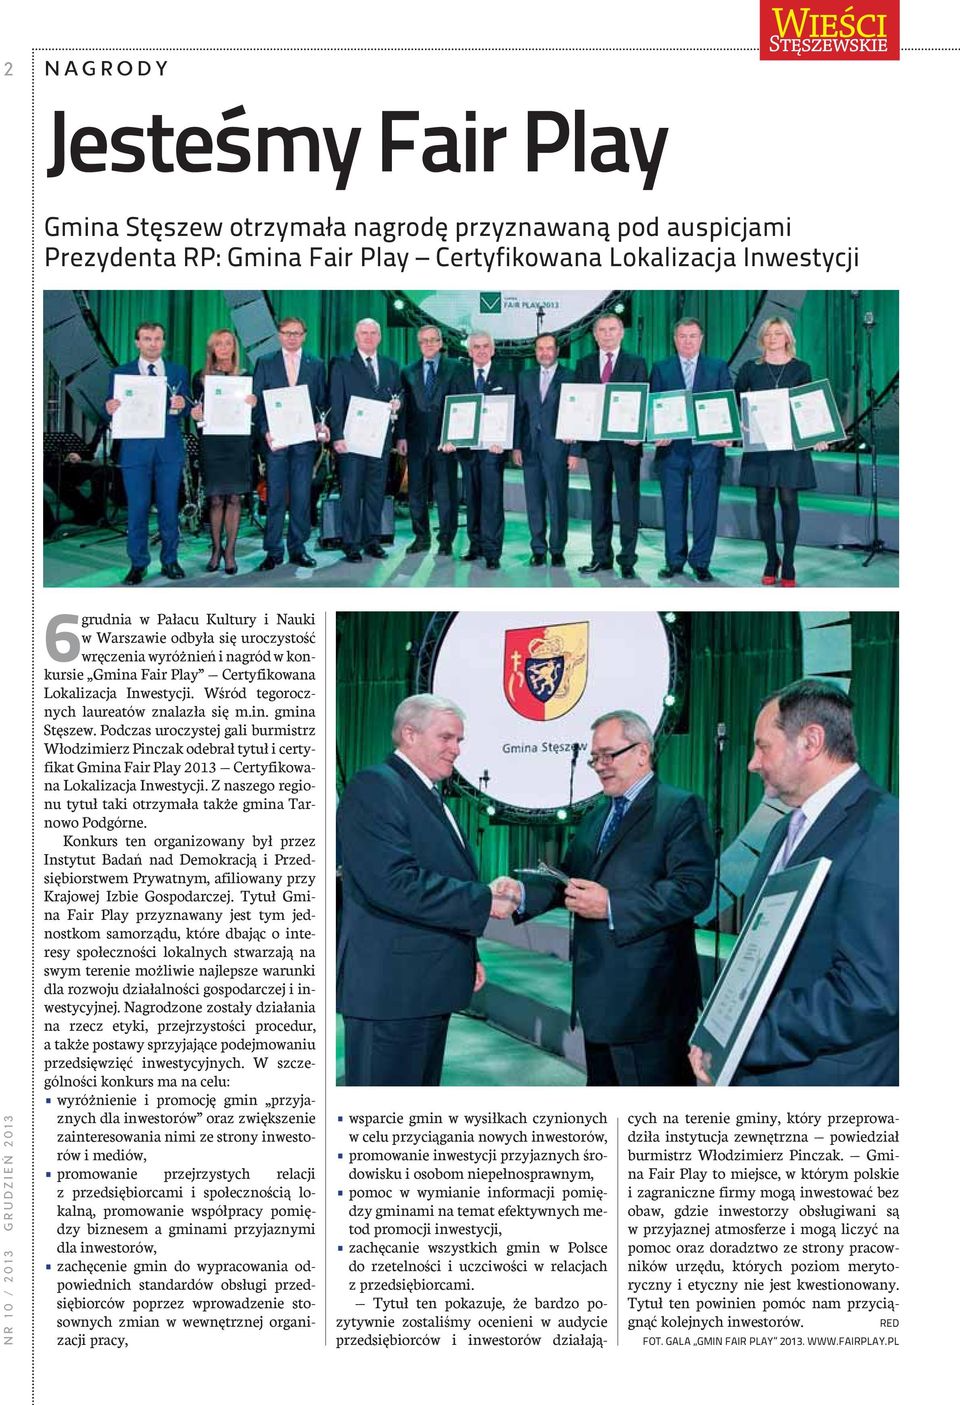 Podczas uroczystej gali burmistrz Włodzimierz Pinczak odebrał tytuł i certyfikat Gmina Fair Play 2013 Certyfikowana Lokalizacja Inwestycji.